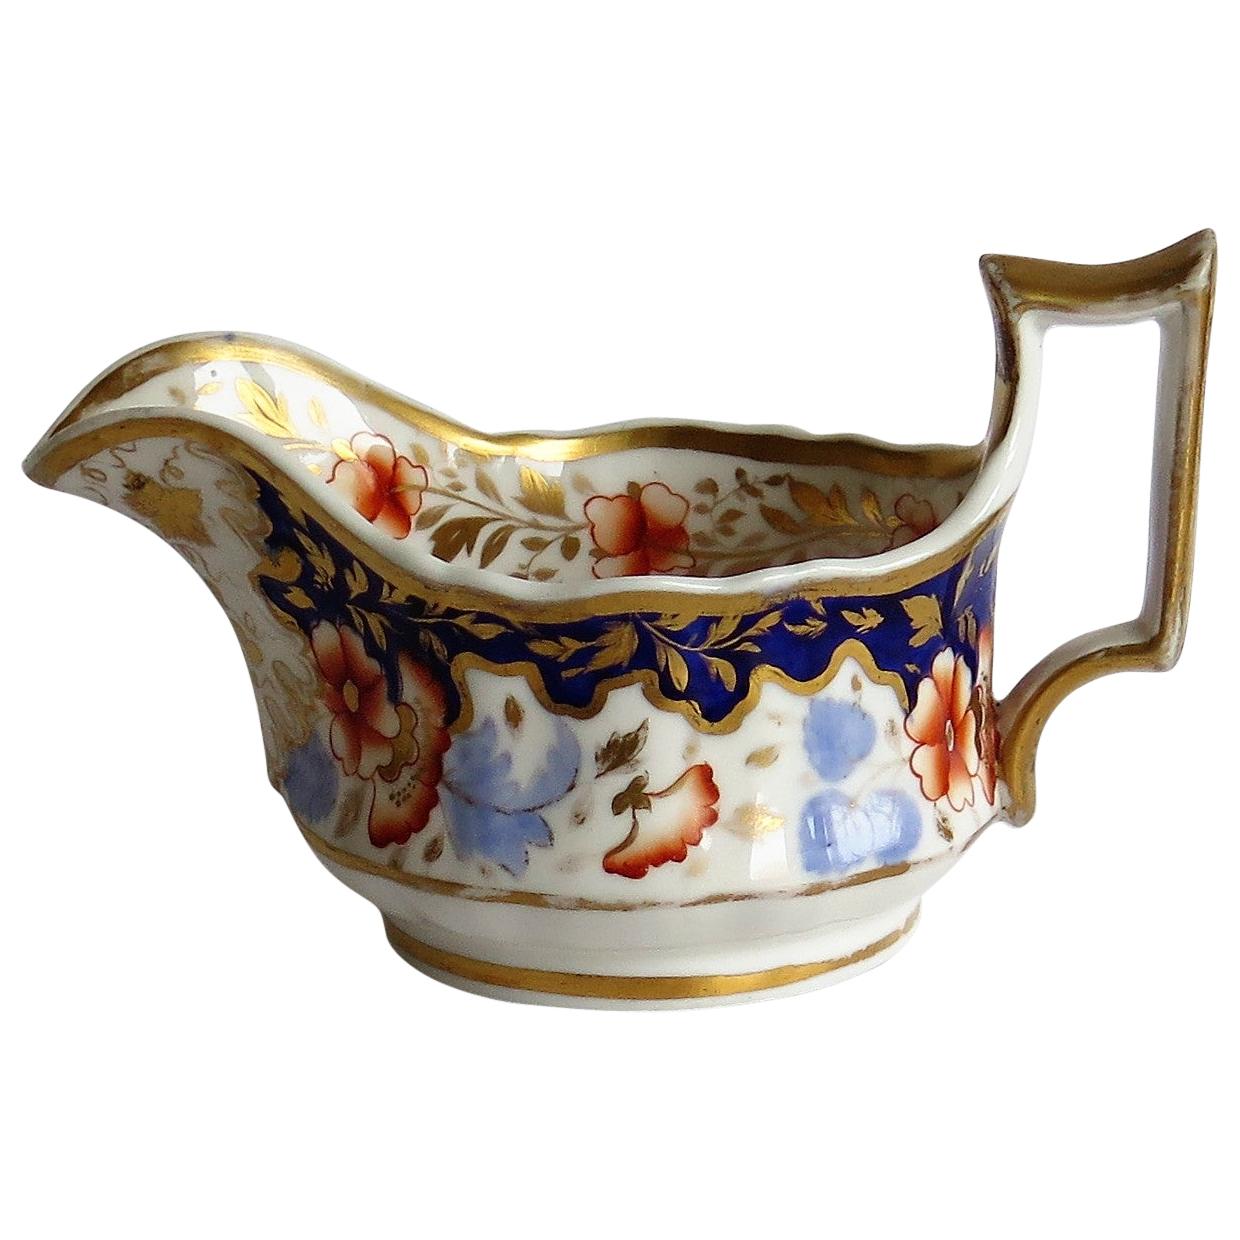 Pichet à lait ou crémier en porcelaine de Ridgway à motif 2/1005, période Régence, vers 1825